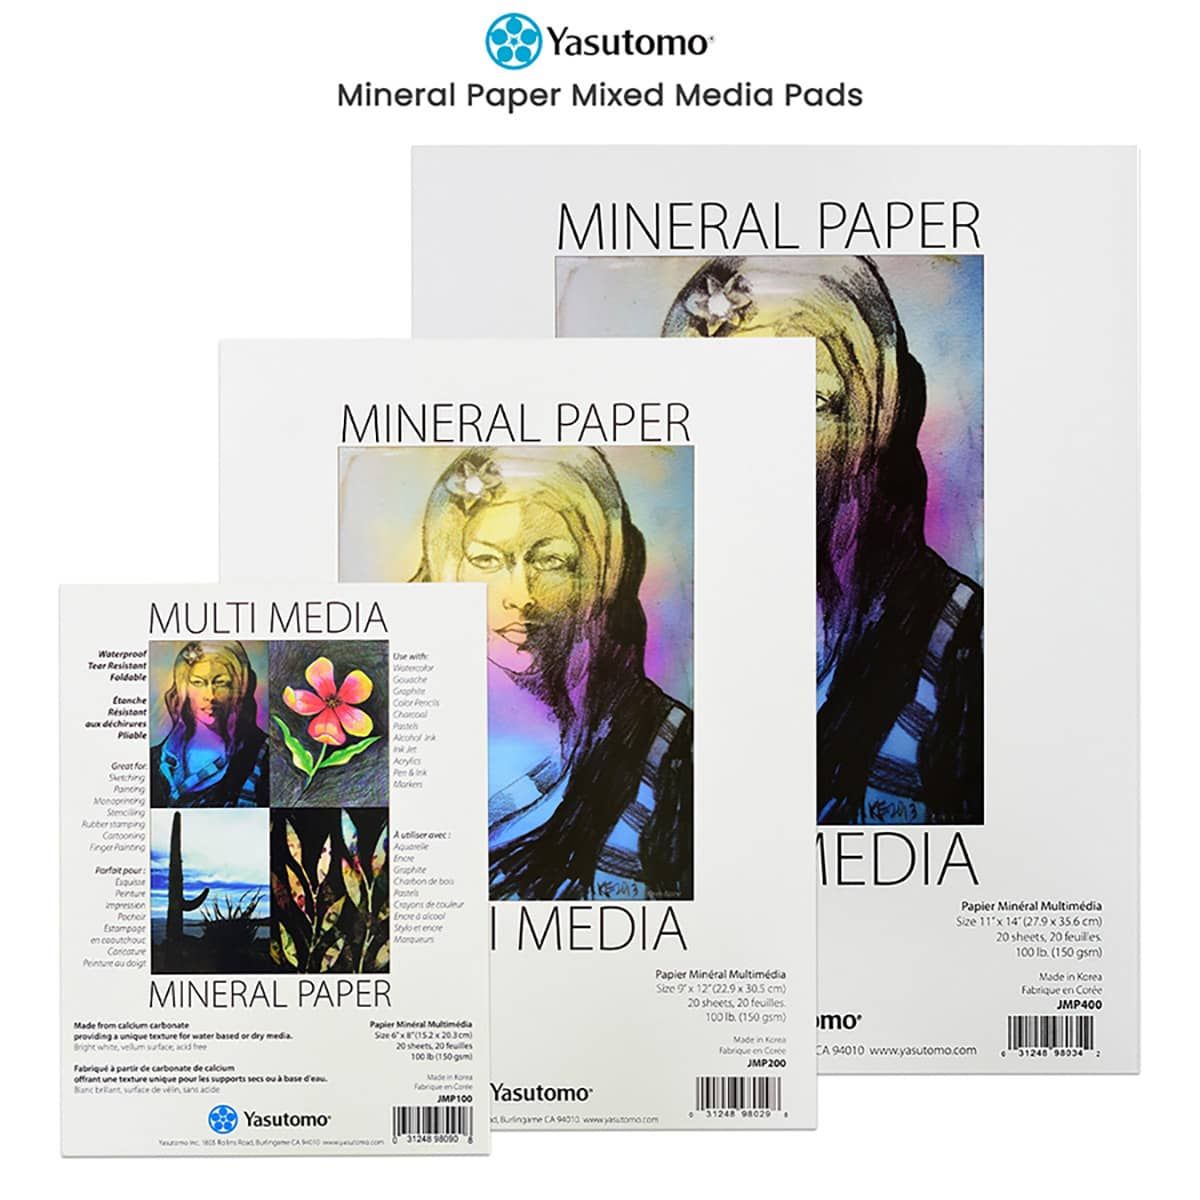 Yasutomo Mineral Paper Mixed Media Pads